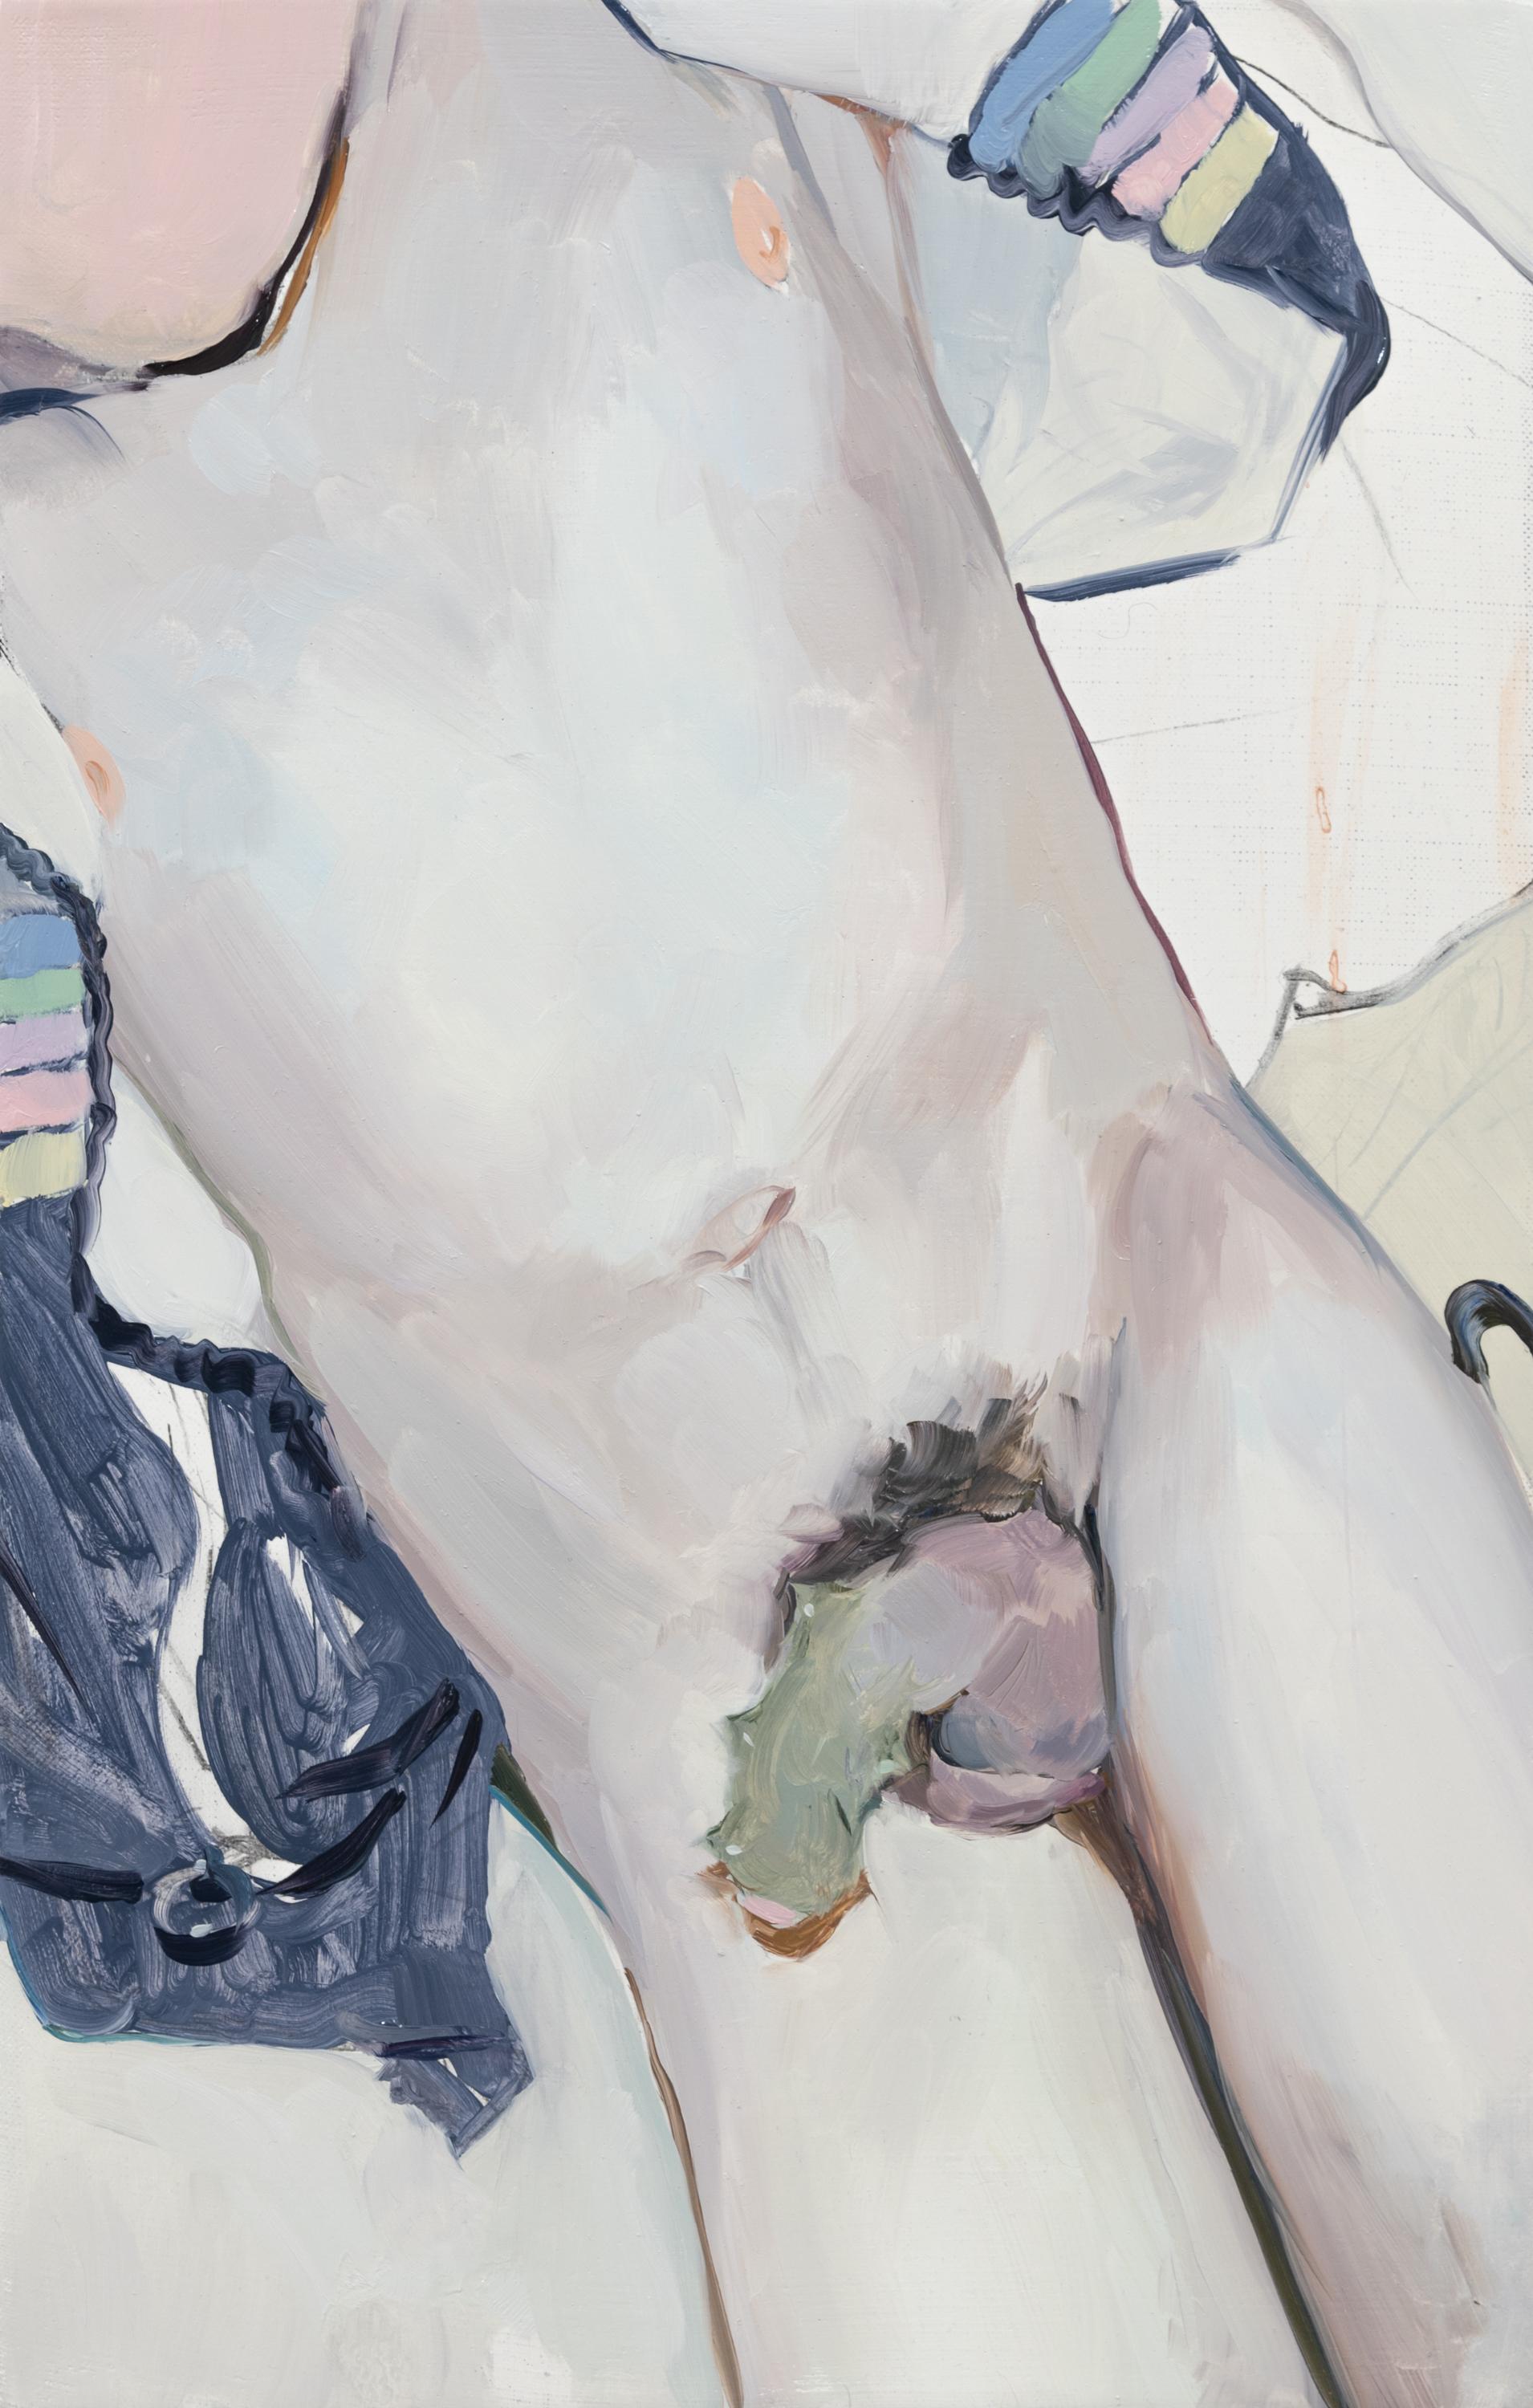 Gonzalo García Figurative Painting – "Espinas y tallos I" Dornen, Sexualität, männlicher Akt, Pastellfarben, Contemporary